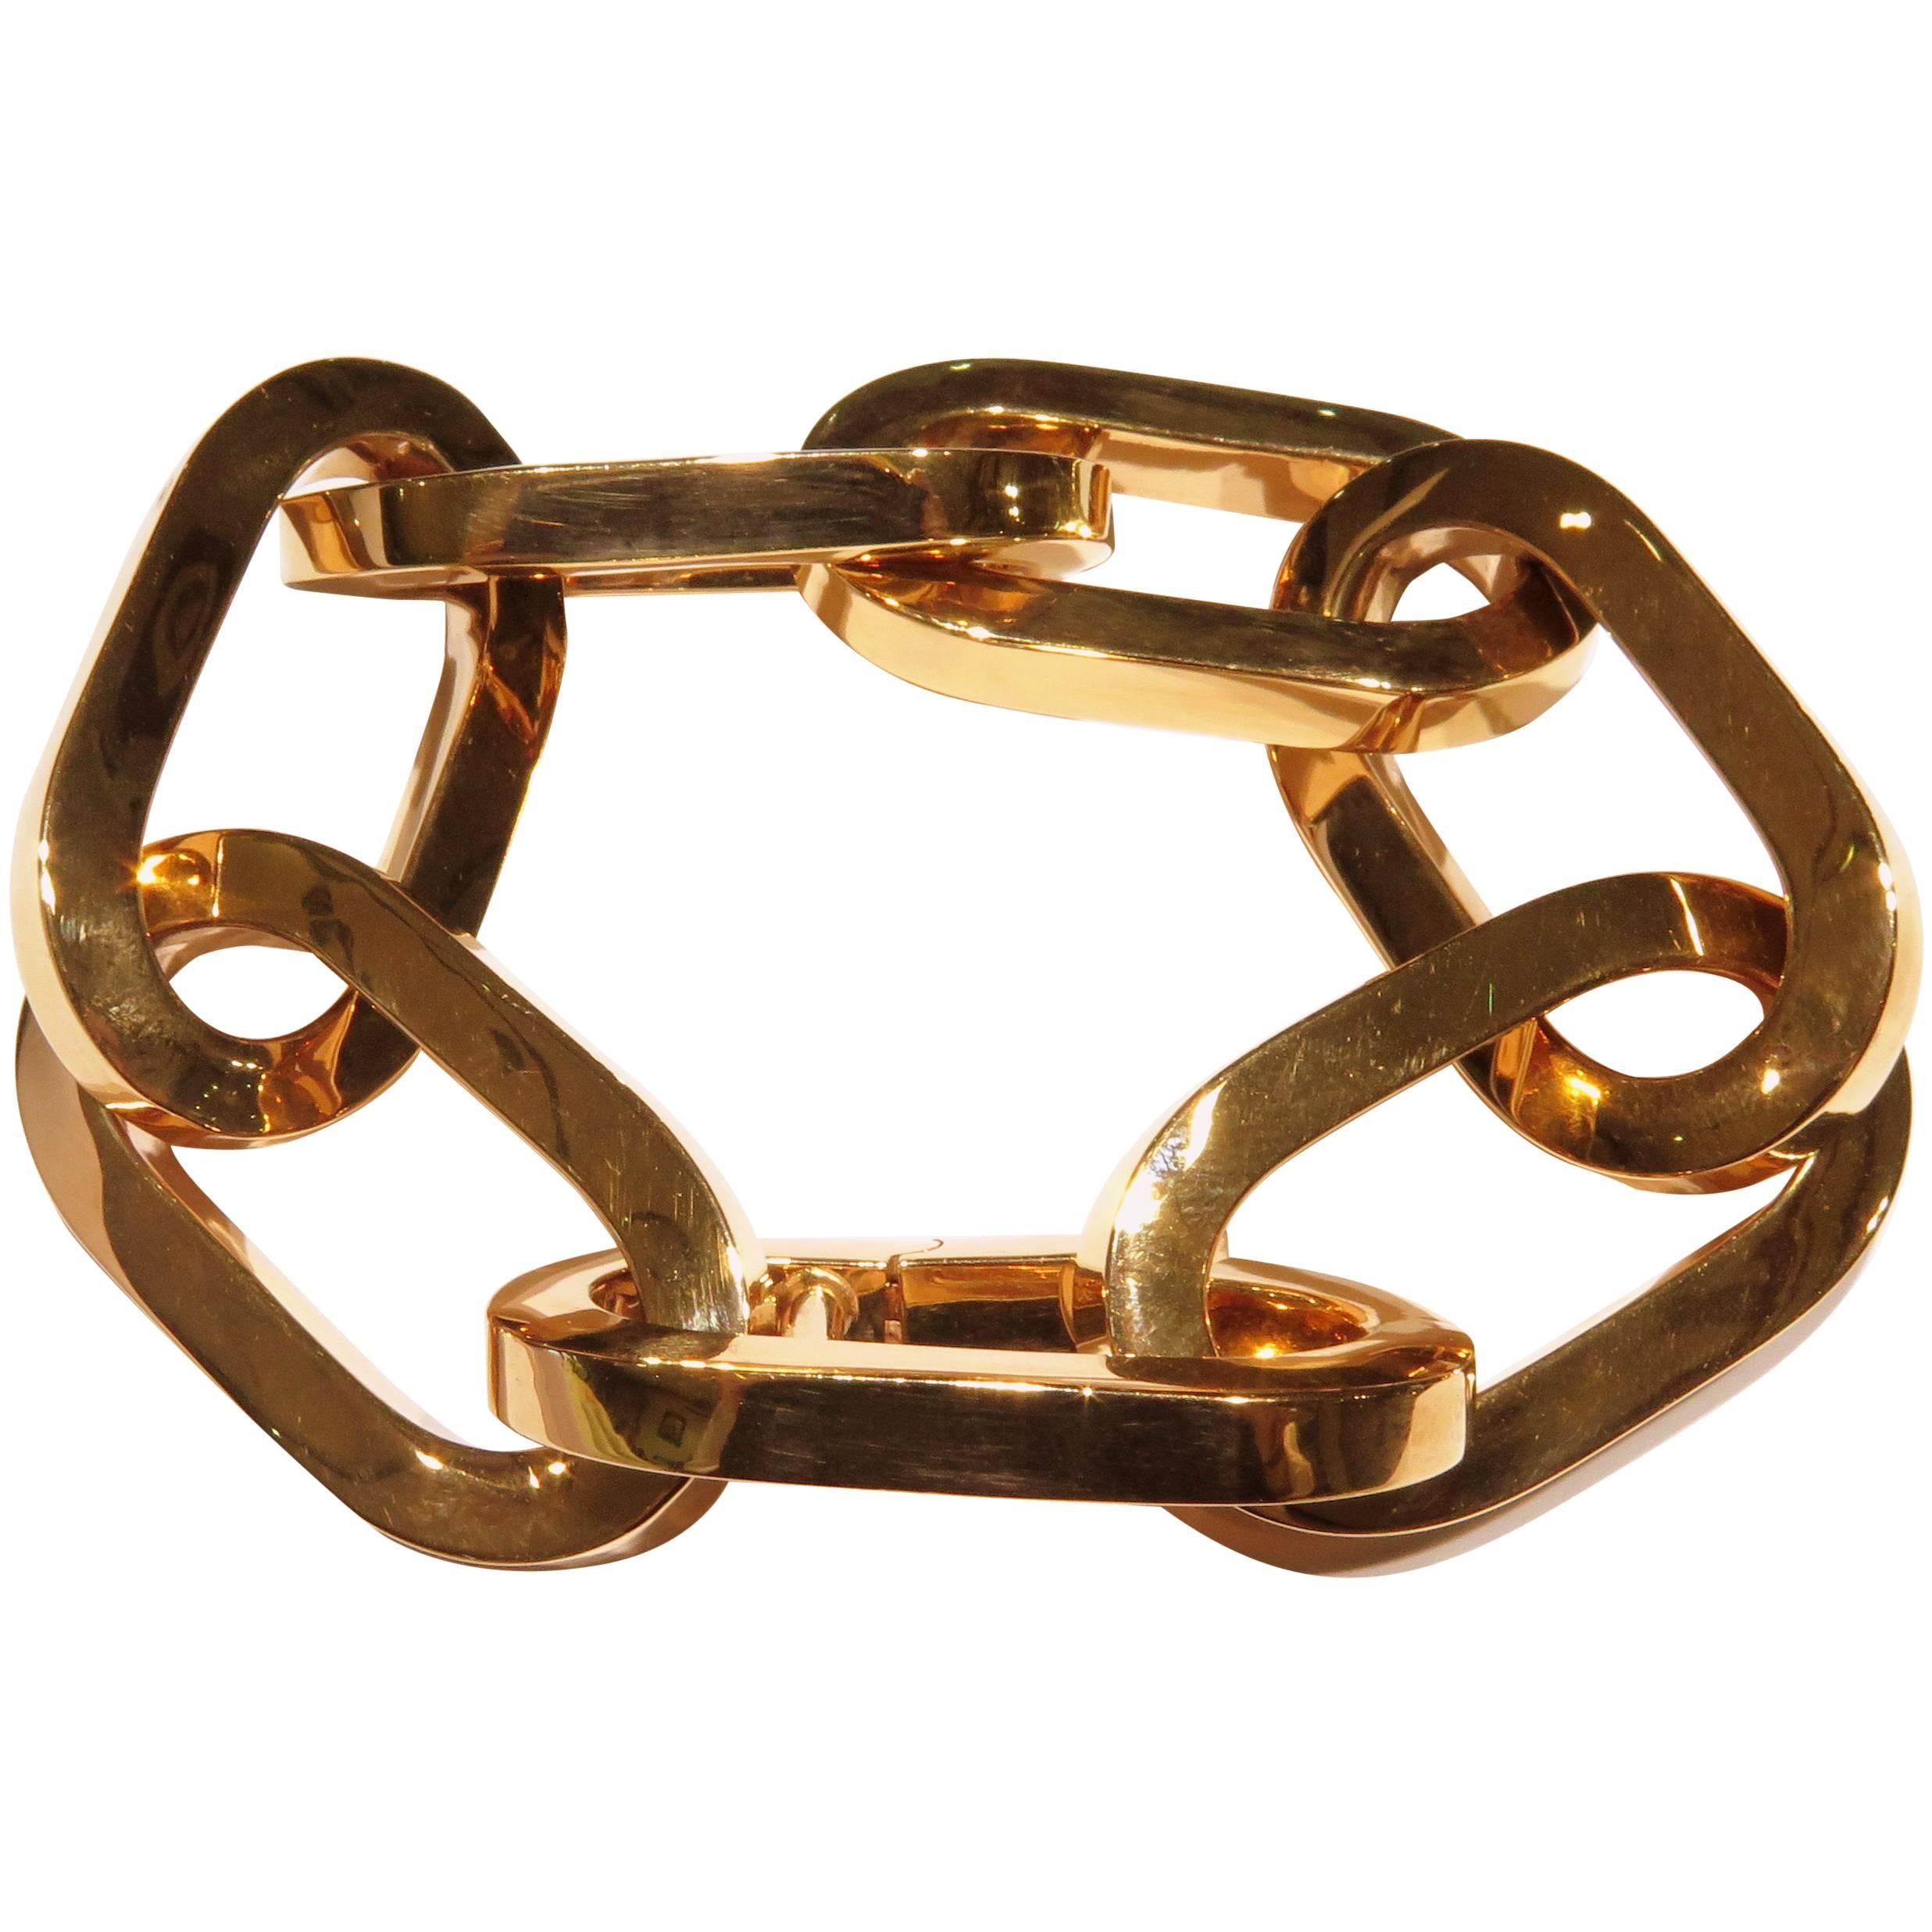 Roberto Coin Spectacular Huge Gold Link Bracelet